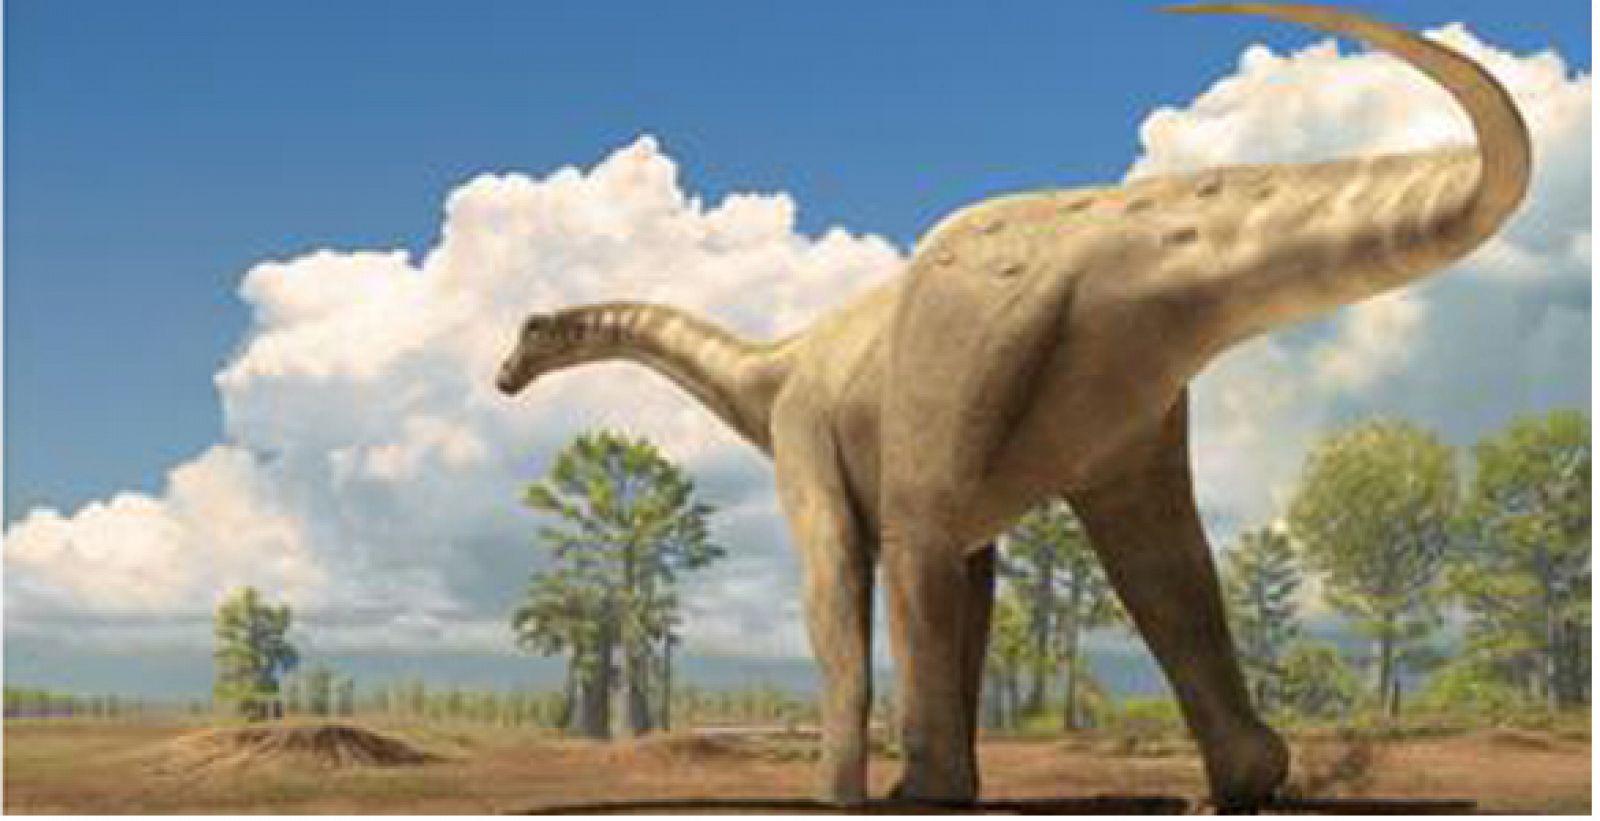 Reconstrucción de un dinosaruio de la familia titanosaurio, que según la investigación se extinguieron repentinamente